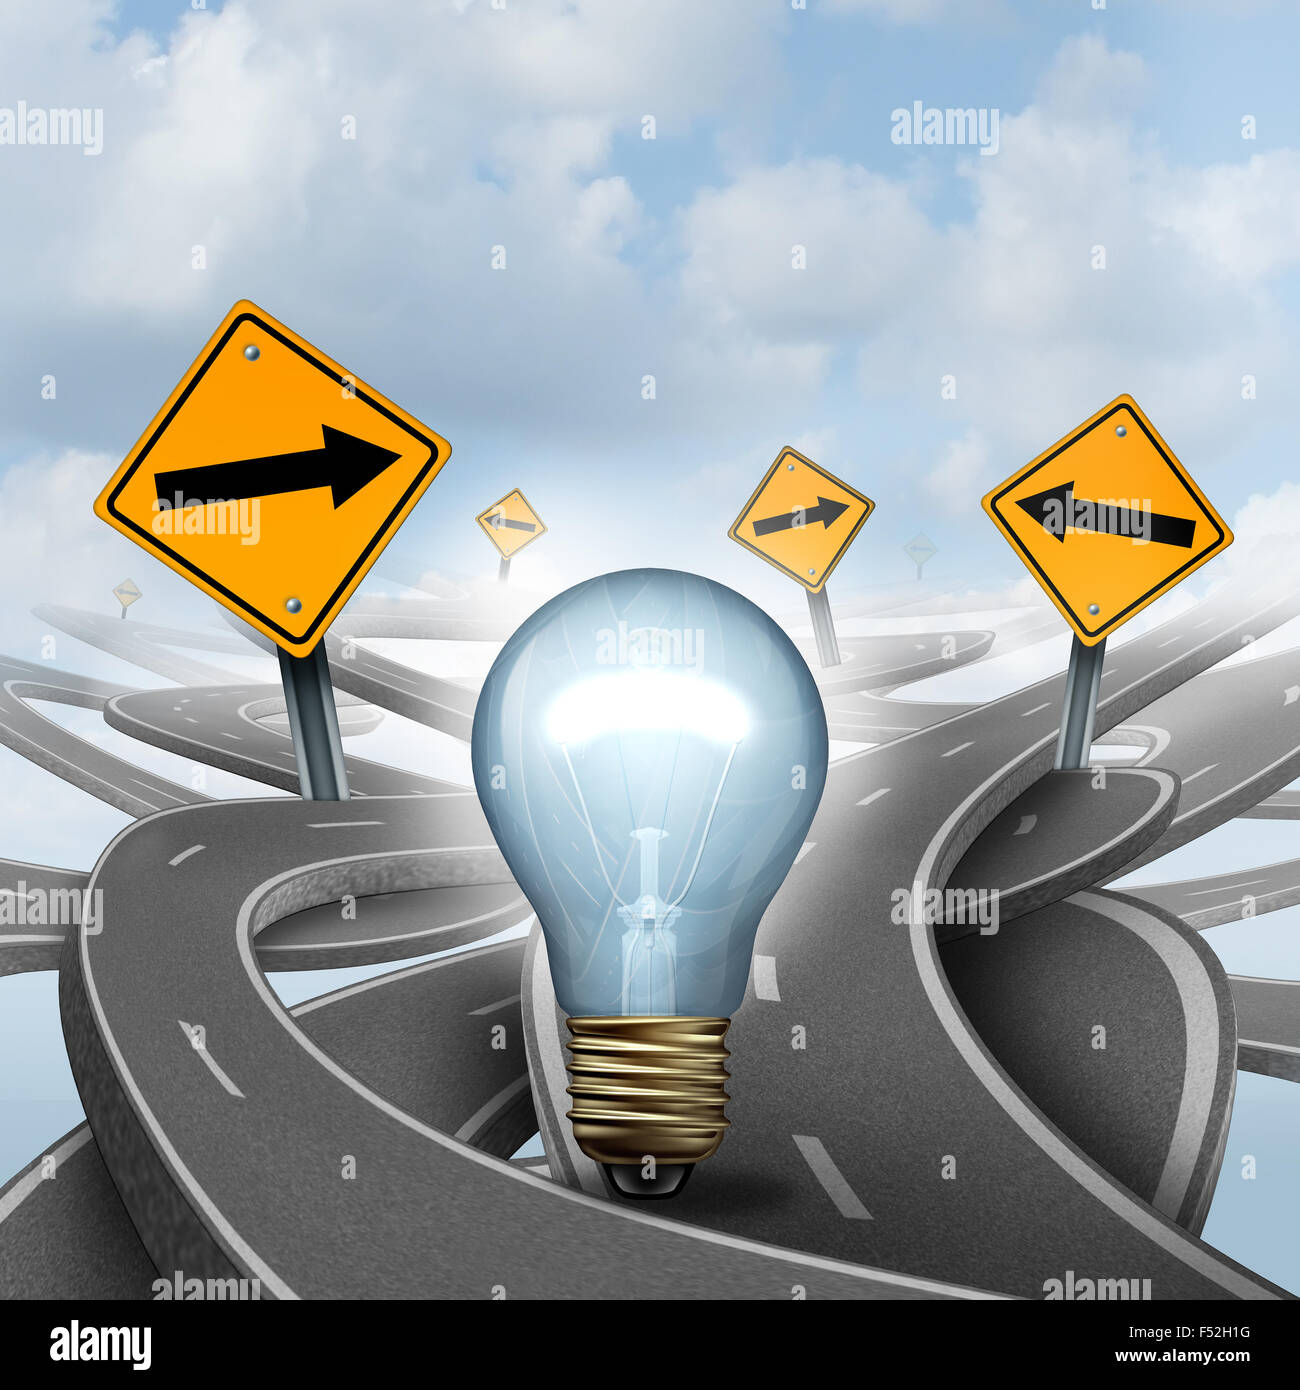 Strategiekonzept Ideen als Symbol mit einer Glühlampe oder Glühbirne, die Wahl der richtigen strategischen Weg für eine neue kreative Art mit gelben Verkehr Geschäft Zeichen Pfeile und verschlungenen Straßen und Autobahnen in Richtung verwirrt. Stockfoto